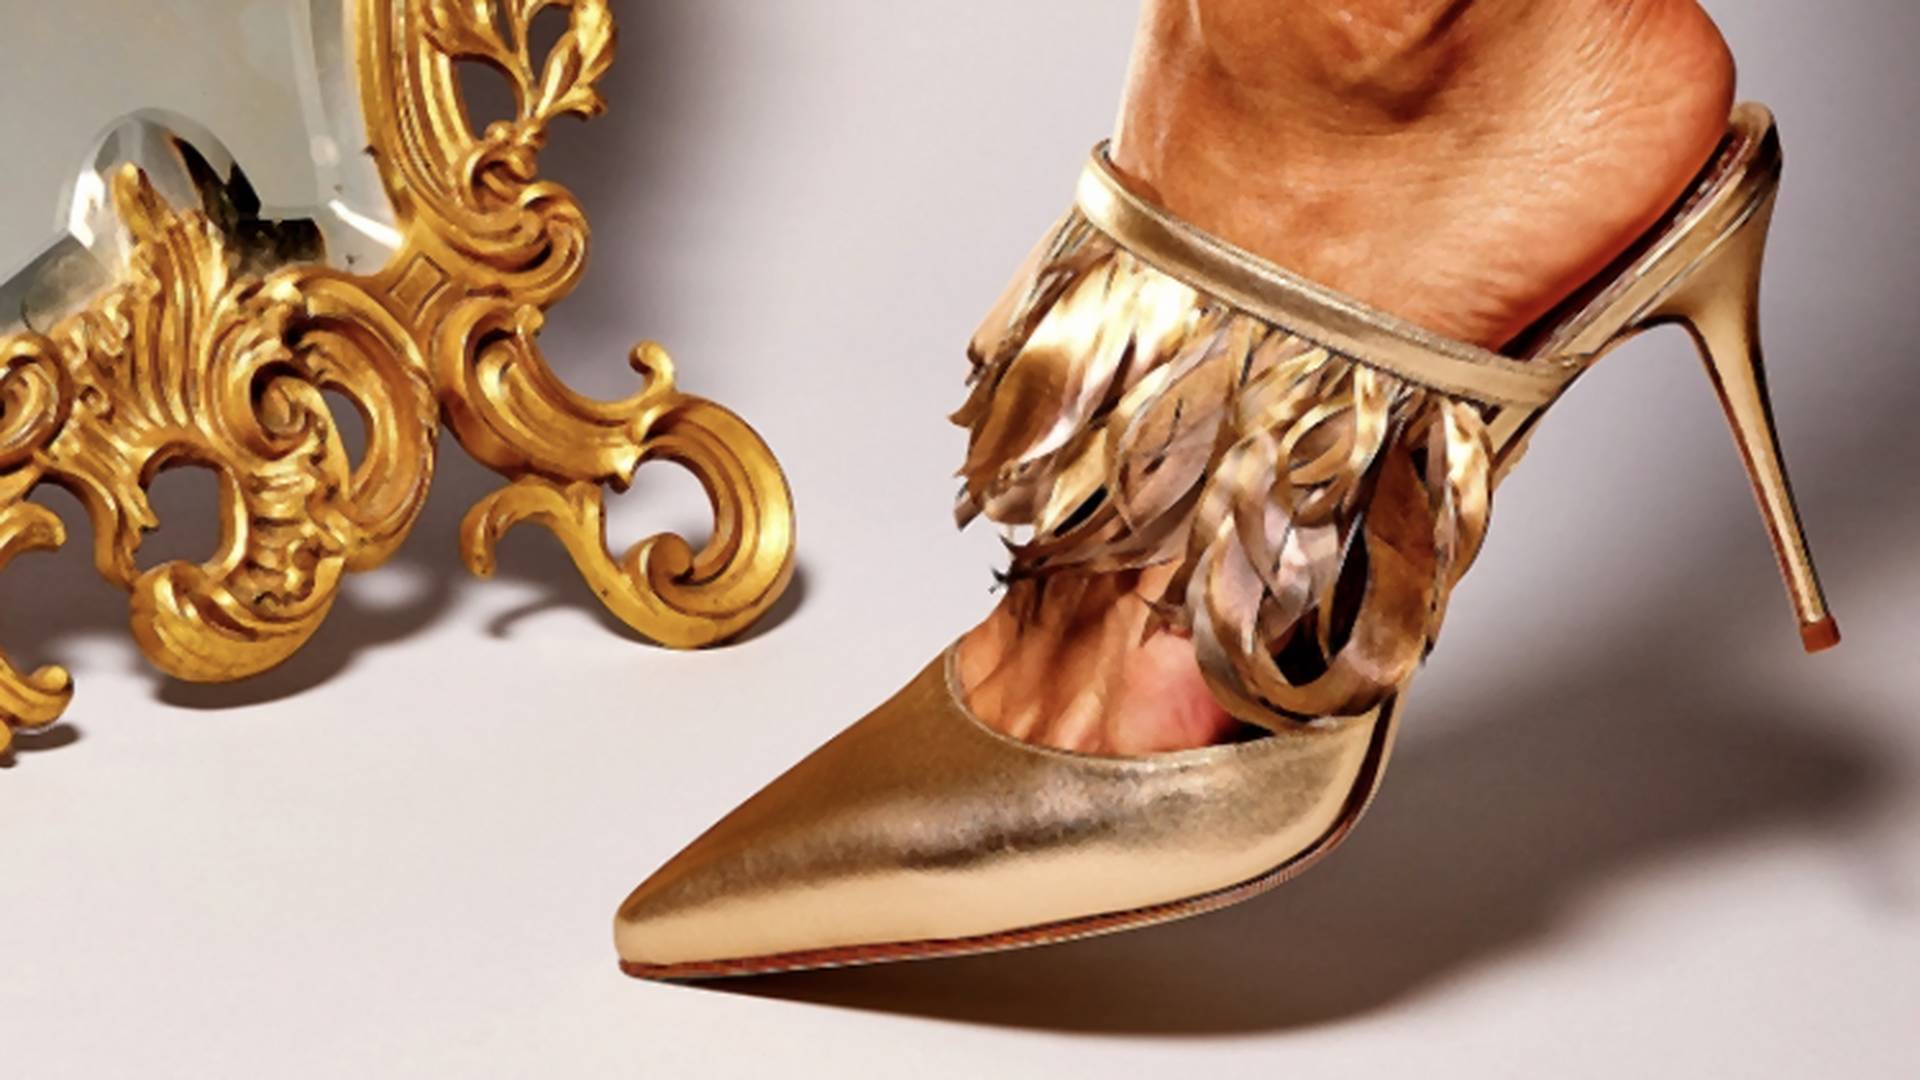 Pola veka čarolije Manolo Blahnik cipela - evo po čemu ćemo ovog vizionara uvek pamtiti 